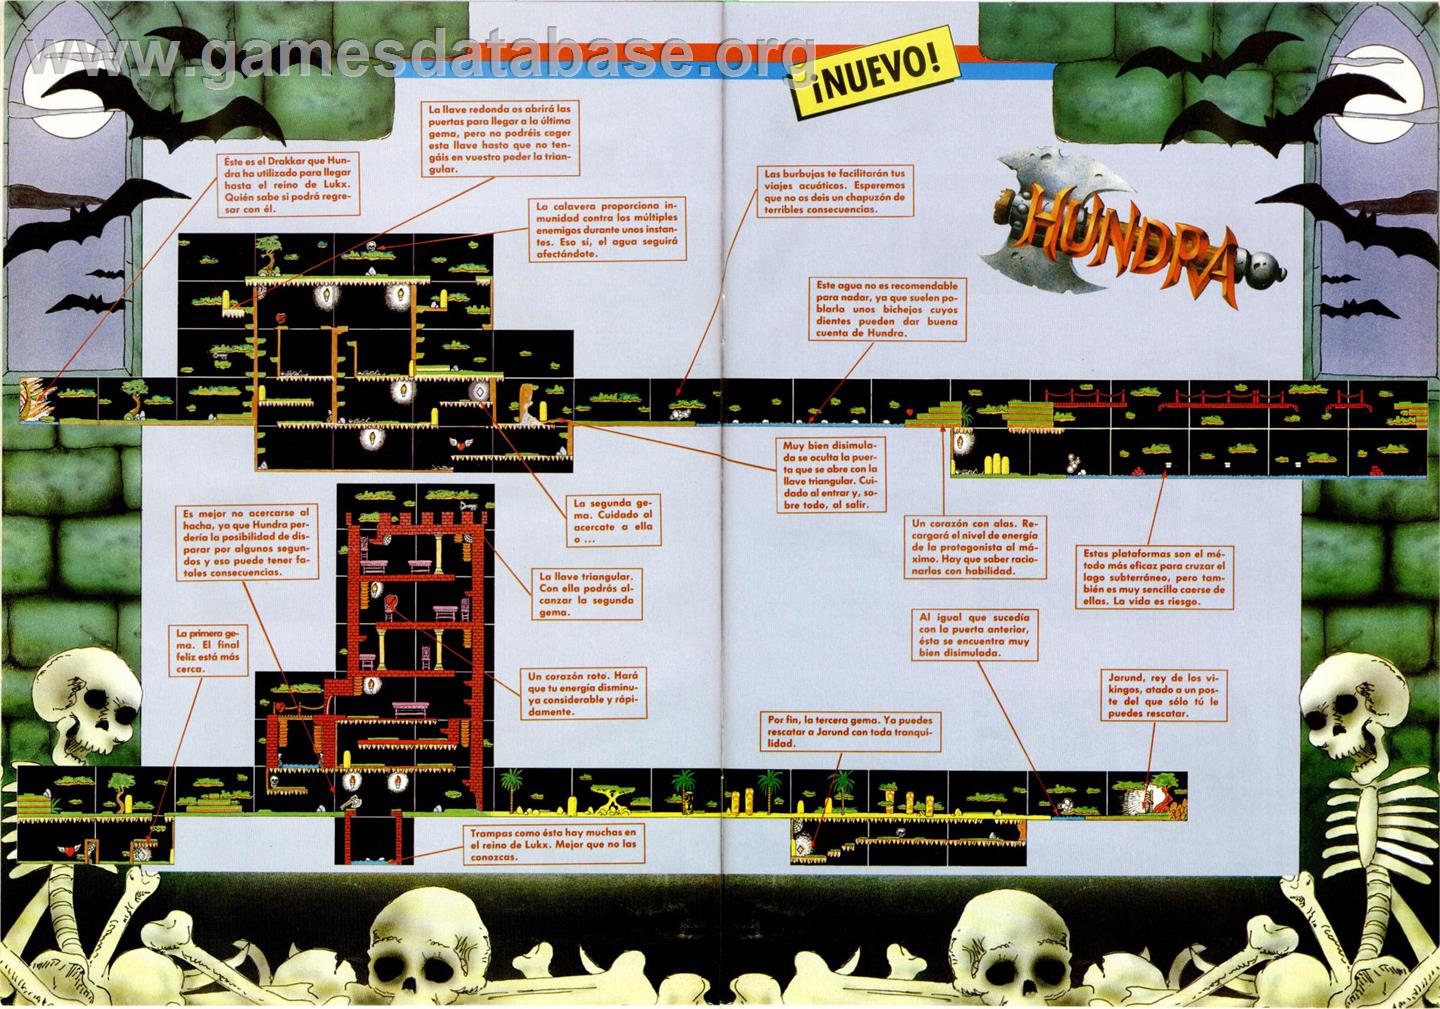 Hundra - Sinclair ZX Spectrum - Artwork - Map